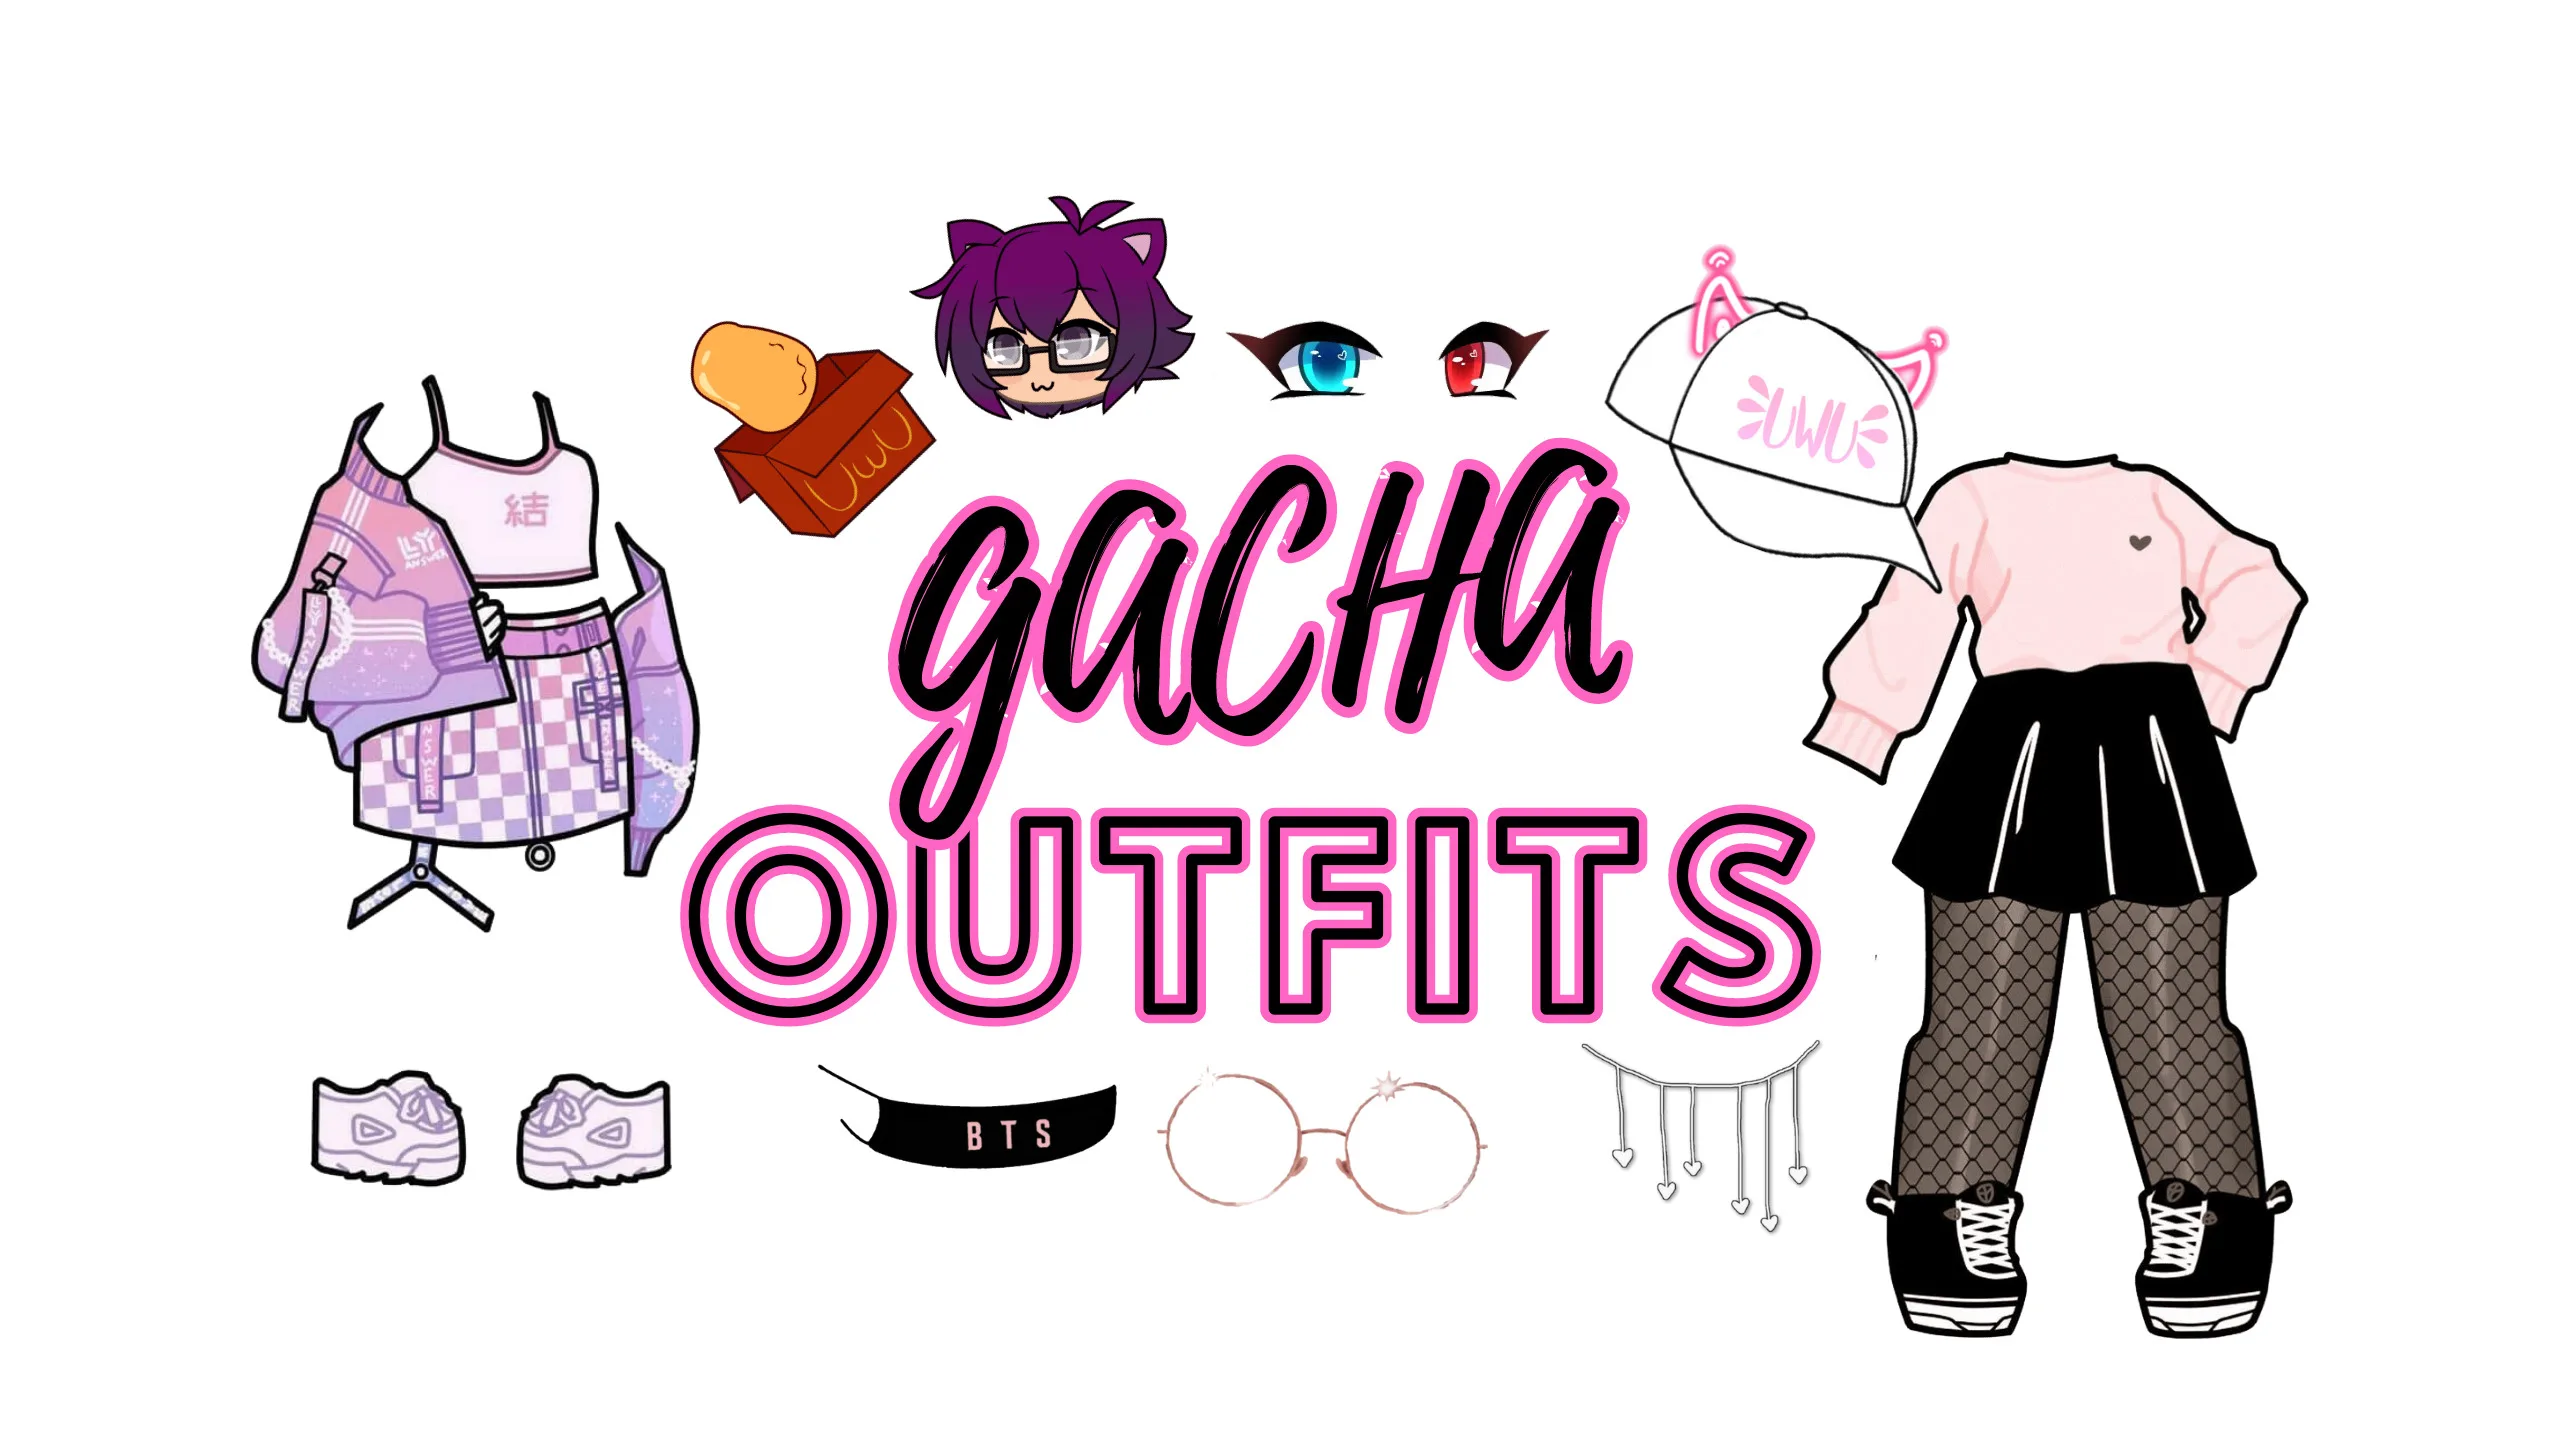 How to make Akaza in Gacha Club - Gacha Outfits